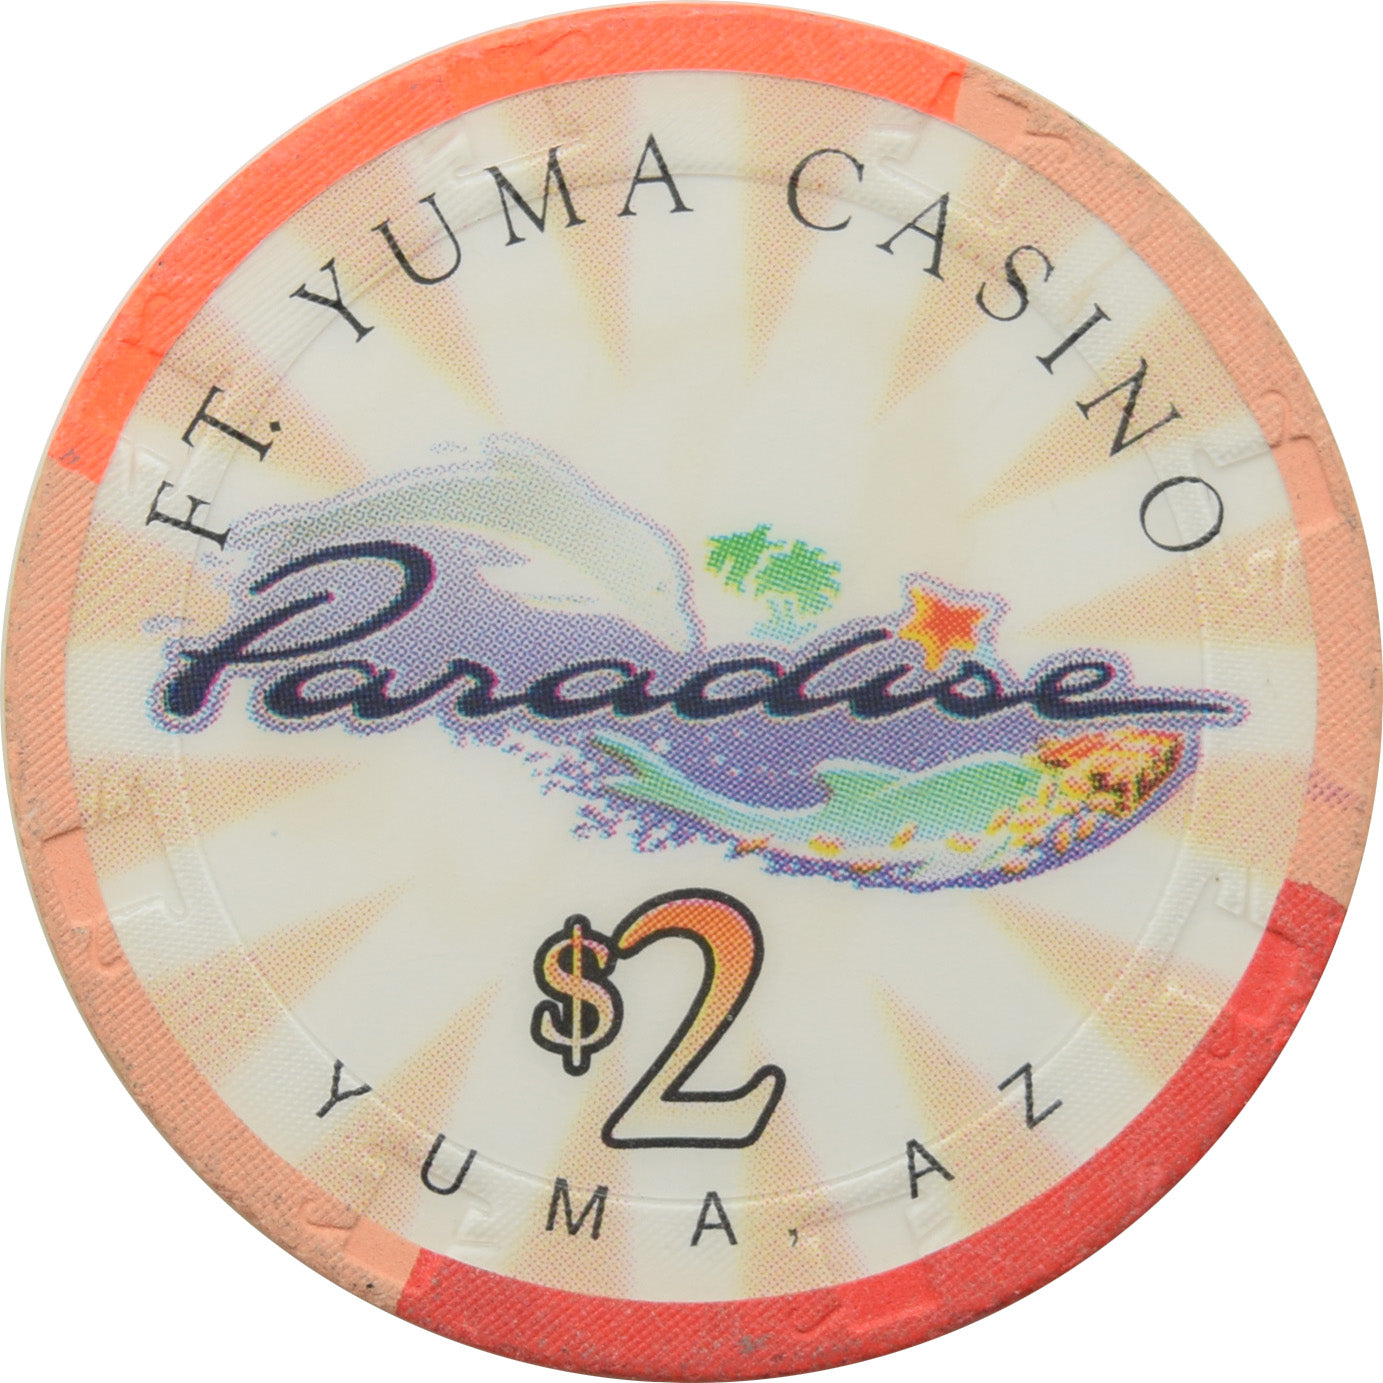 paradise casino yuma county